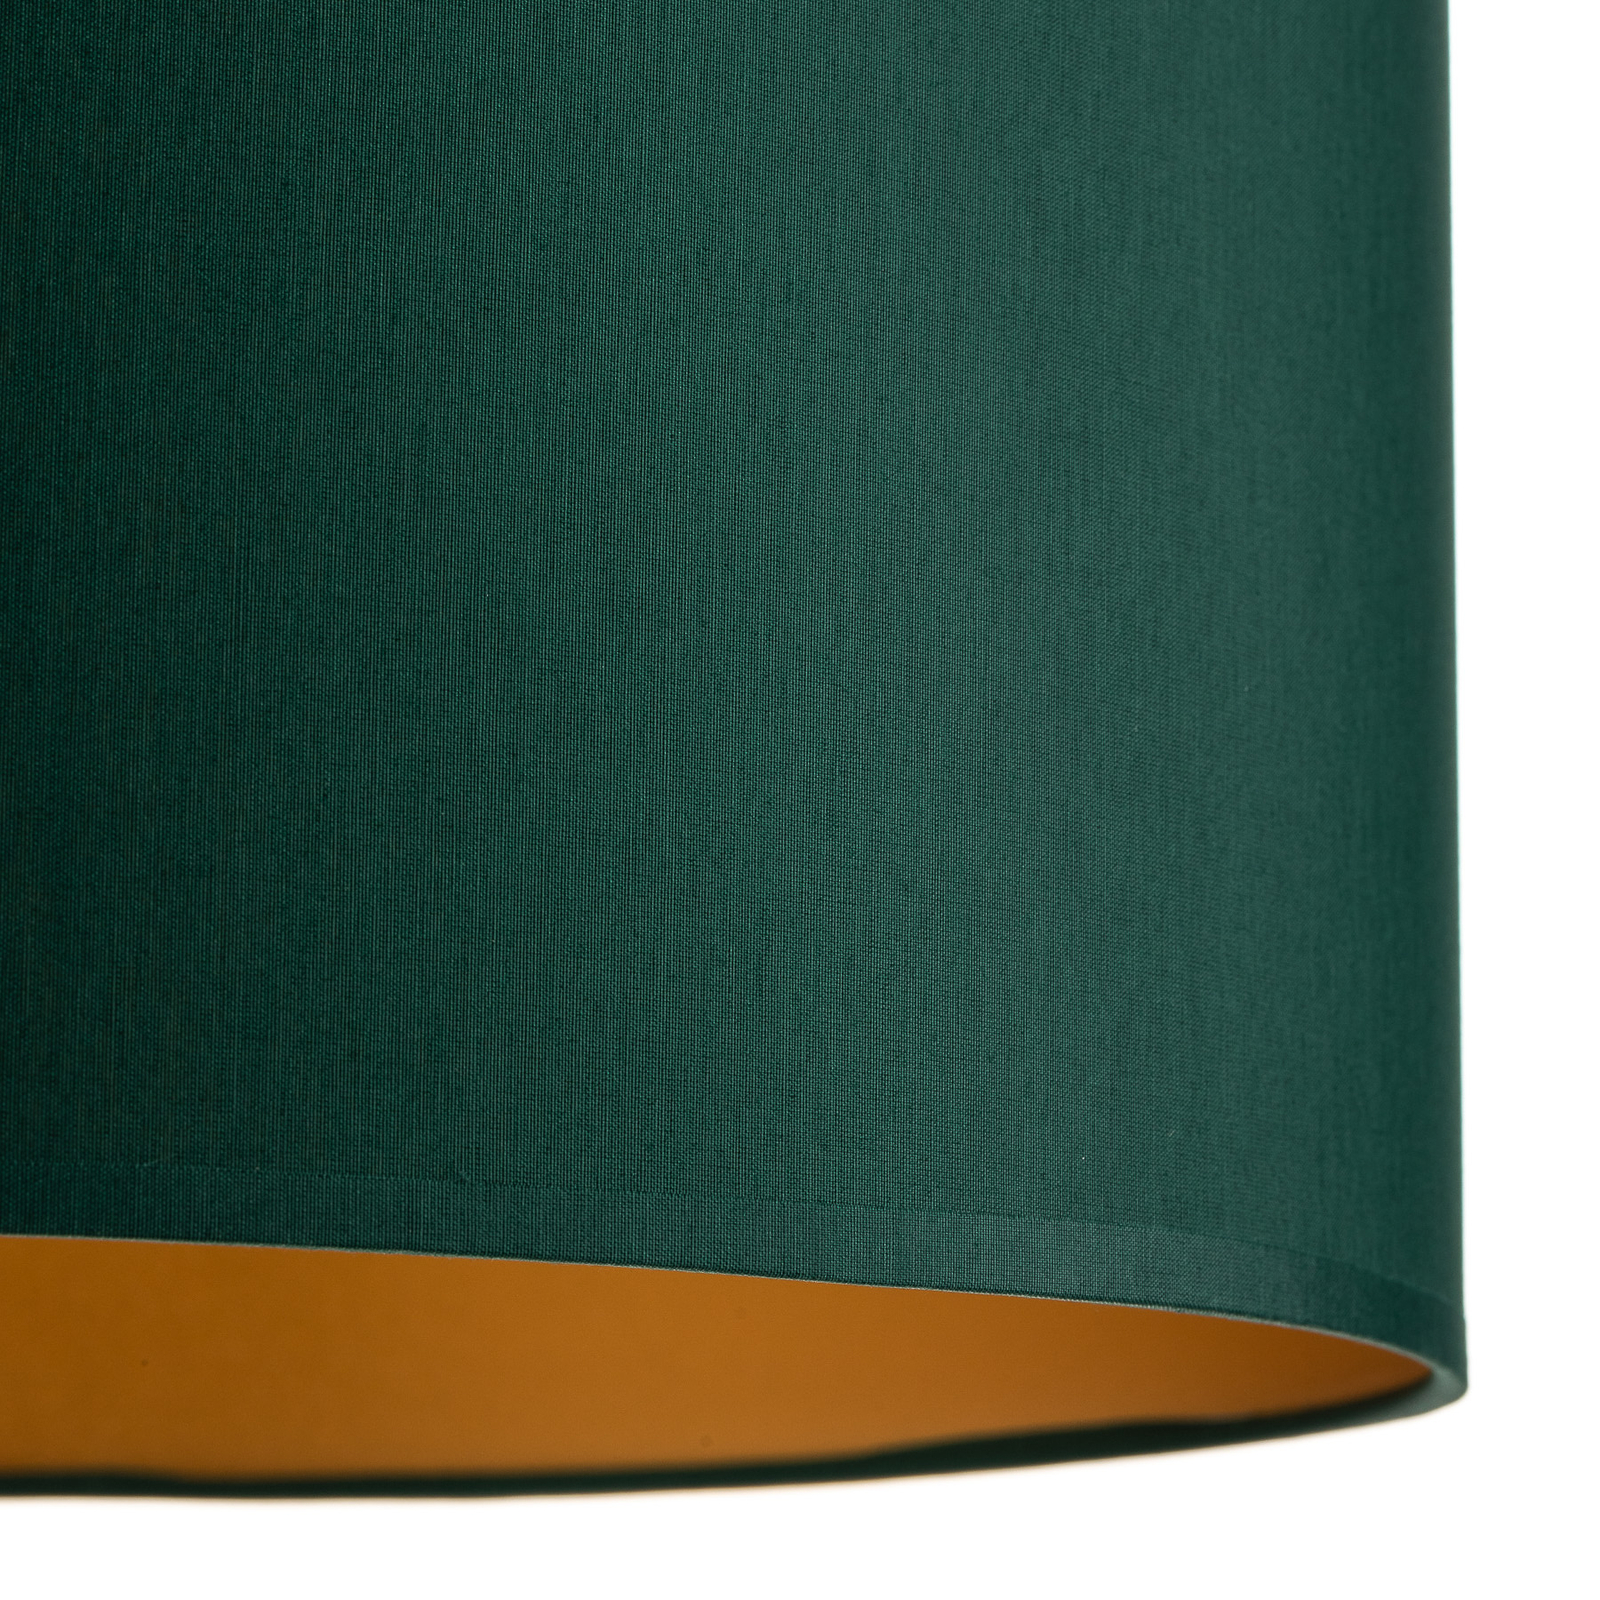 Hanglamp Soho cilindrisch 1-lamp Ø 40cm groen/goud